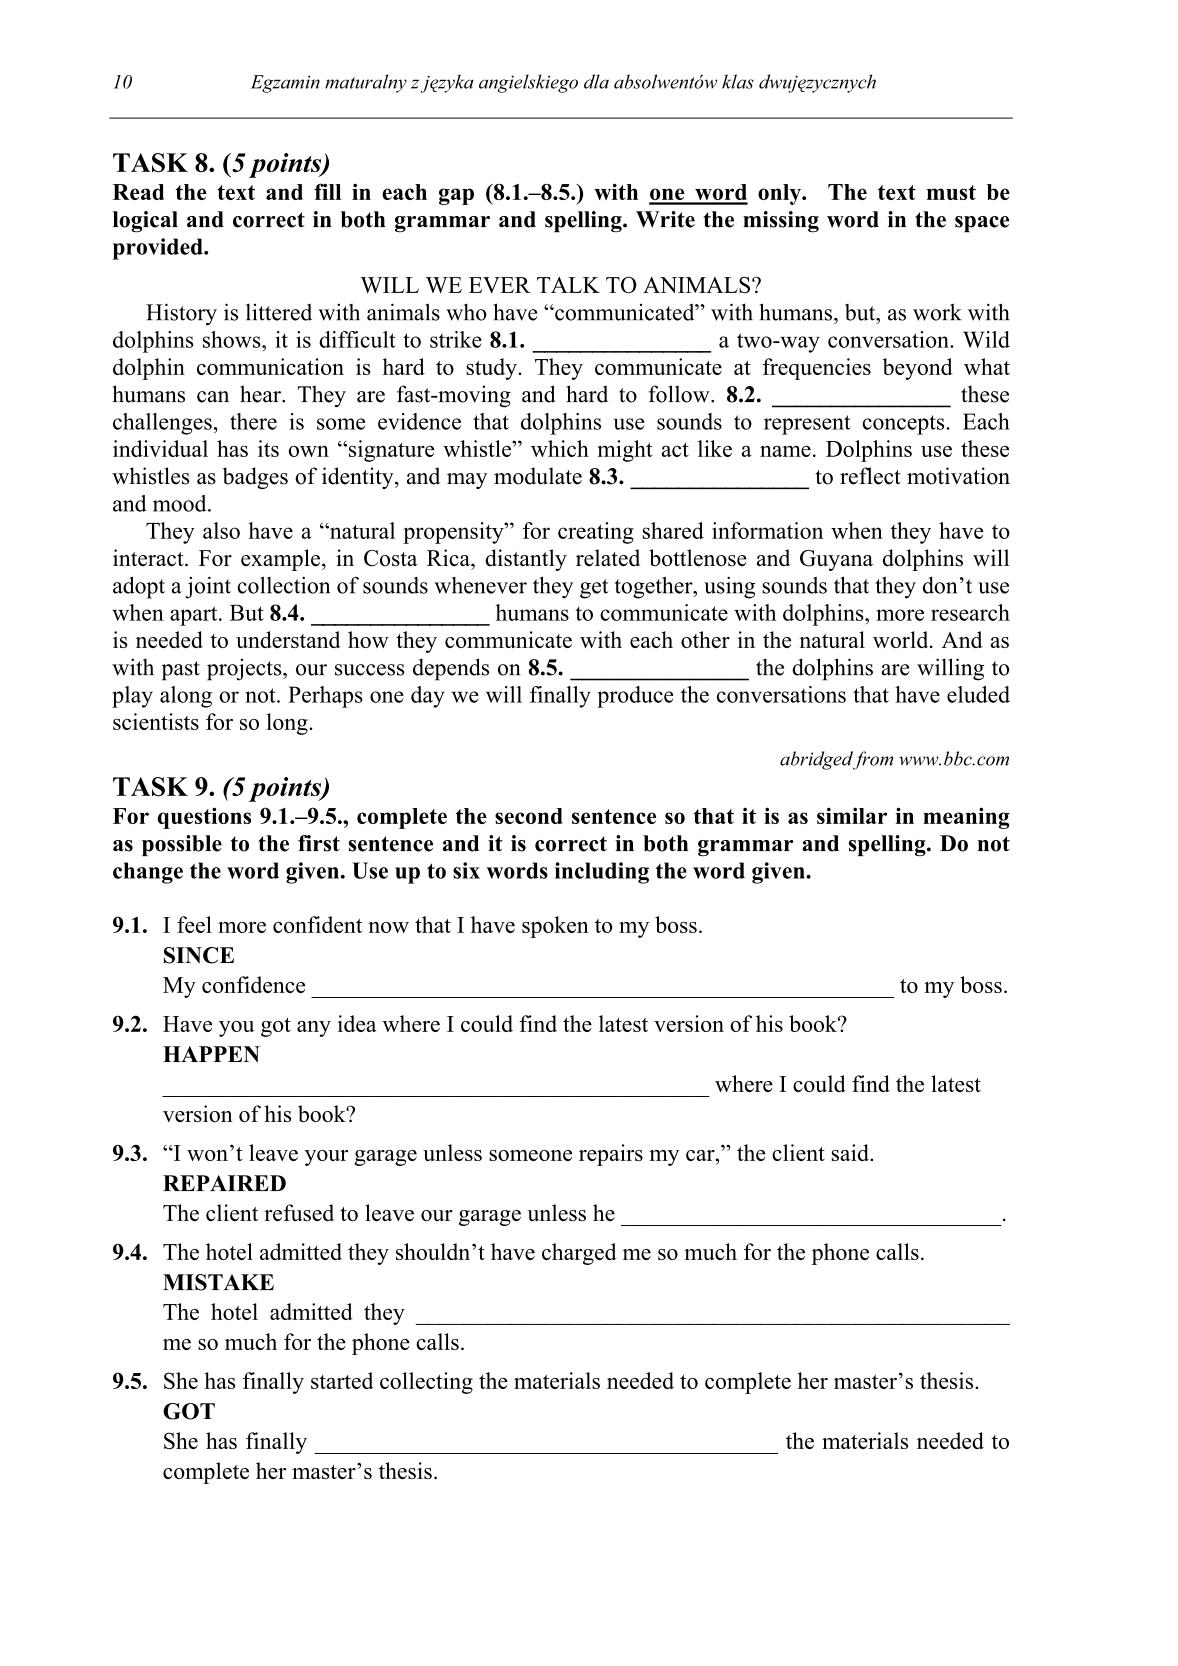 pytania-jezyk-angielski-dla-absolwentow-klas-dwujezycznych-matura-2014-str.10